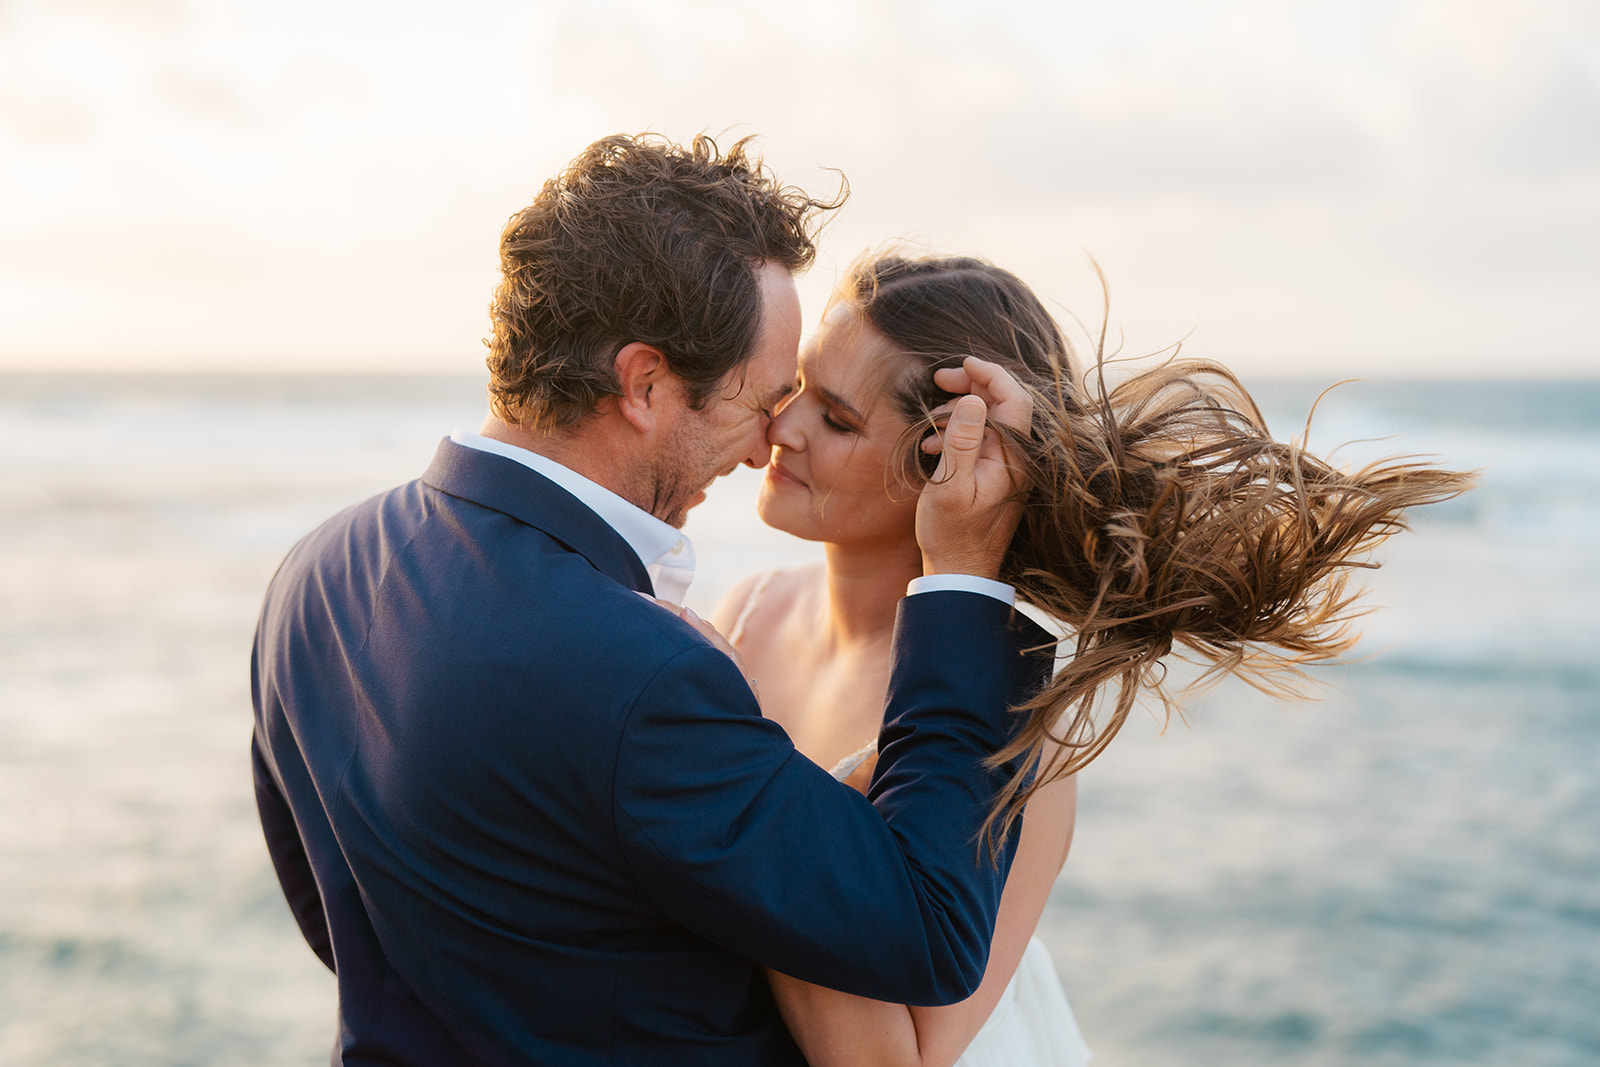 A couple who eloped on Kauai embrace on cliffs.